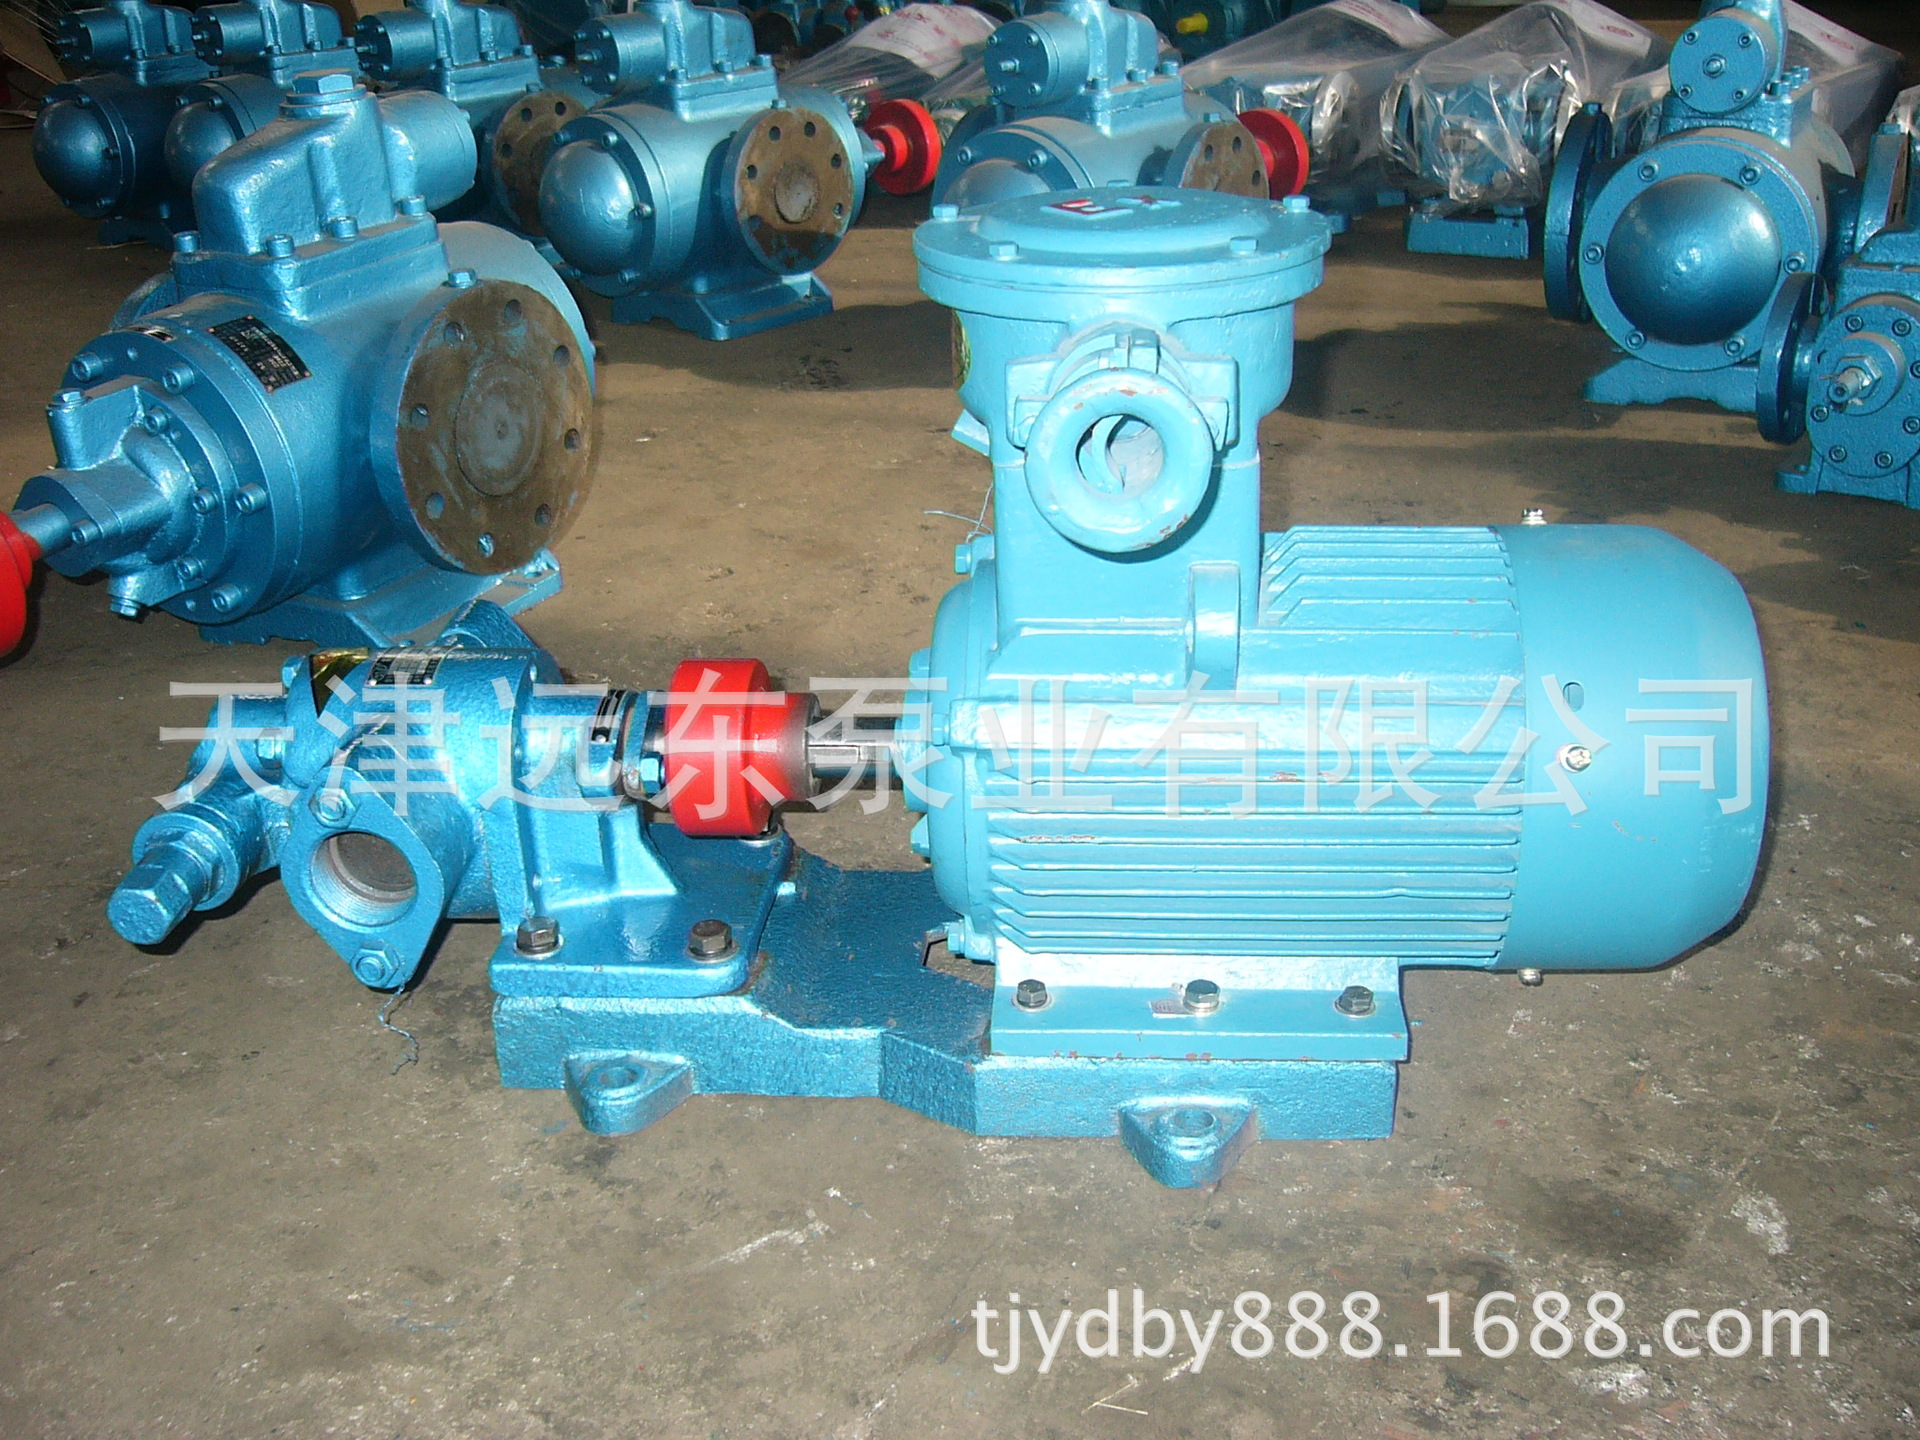 天津远东 KCB-83.3齿轮油泵 润滑油齿轮泵  远东齿轮泵厂家直销示例图2